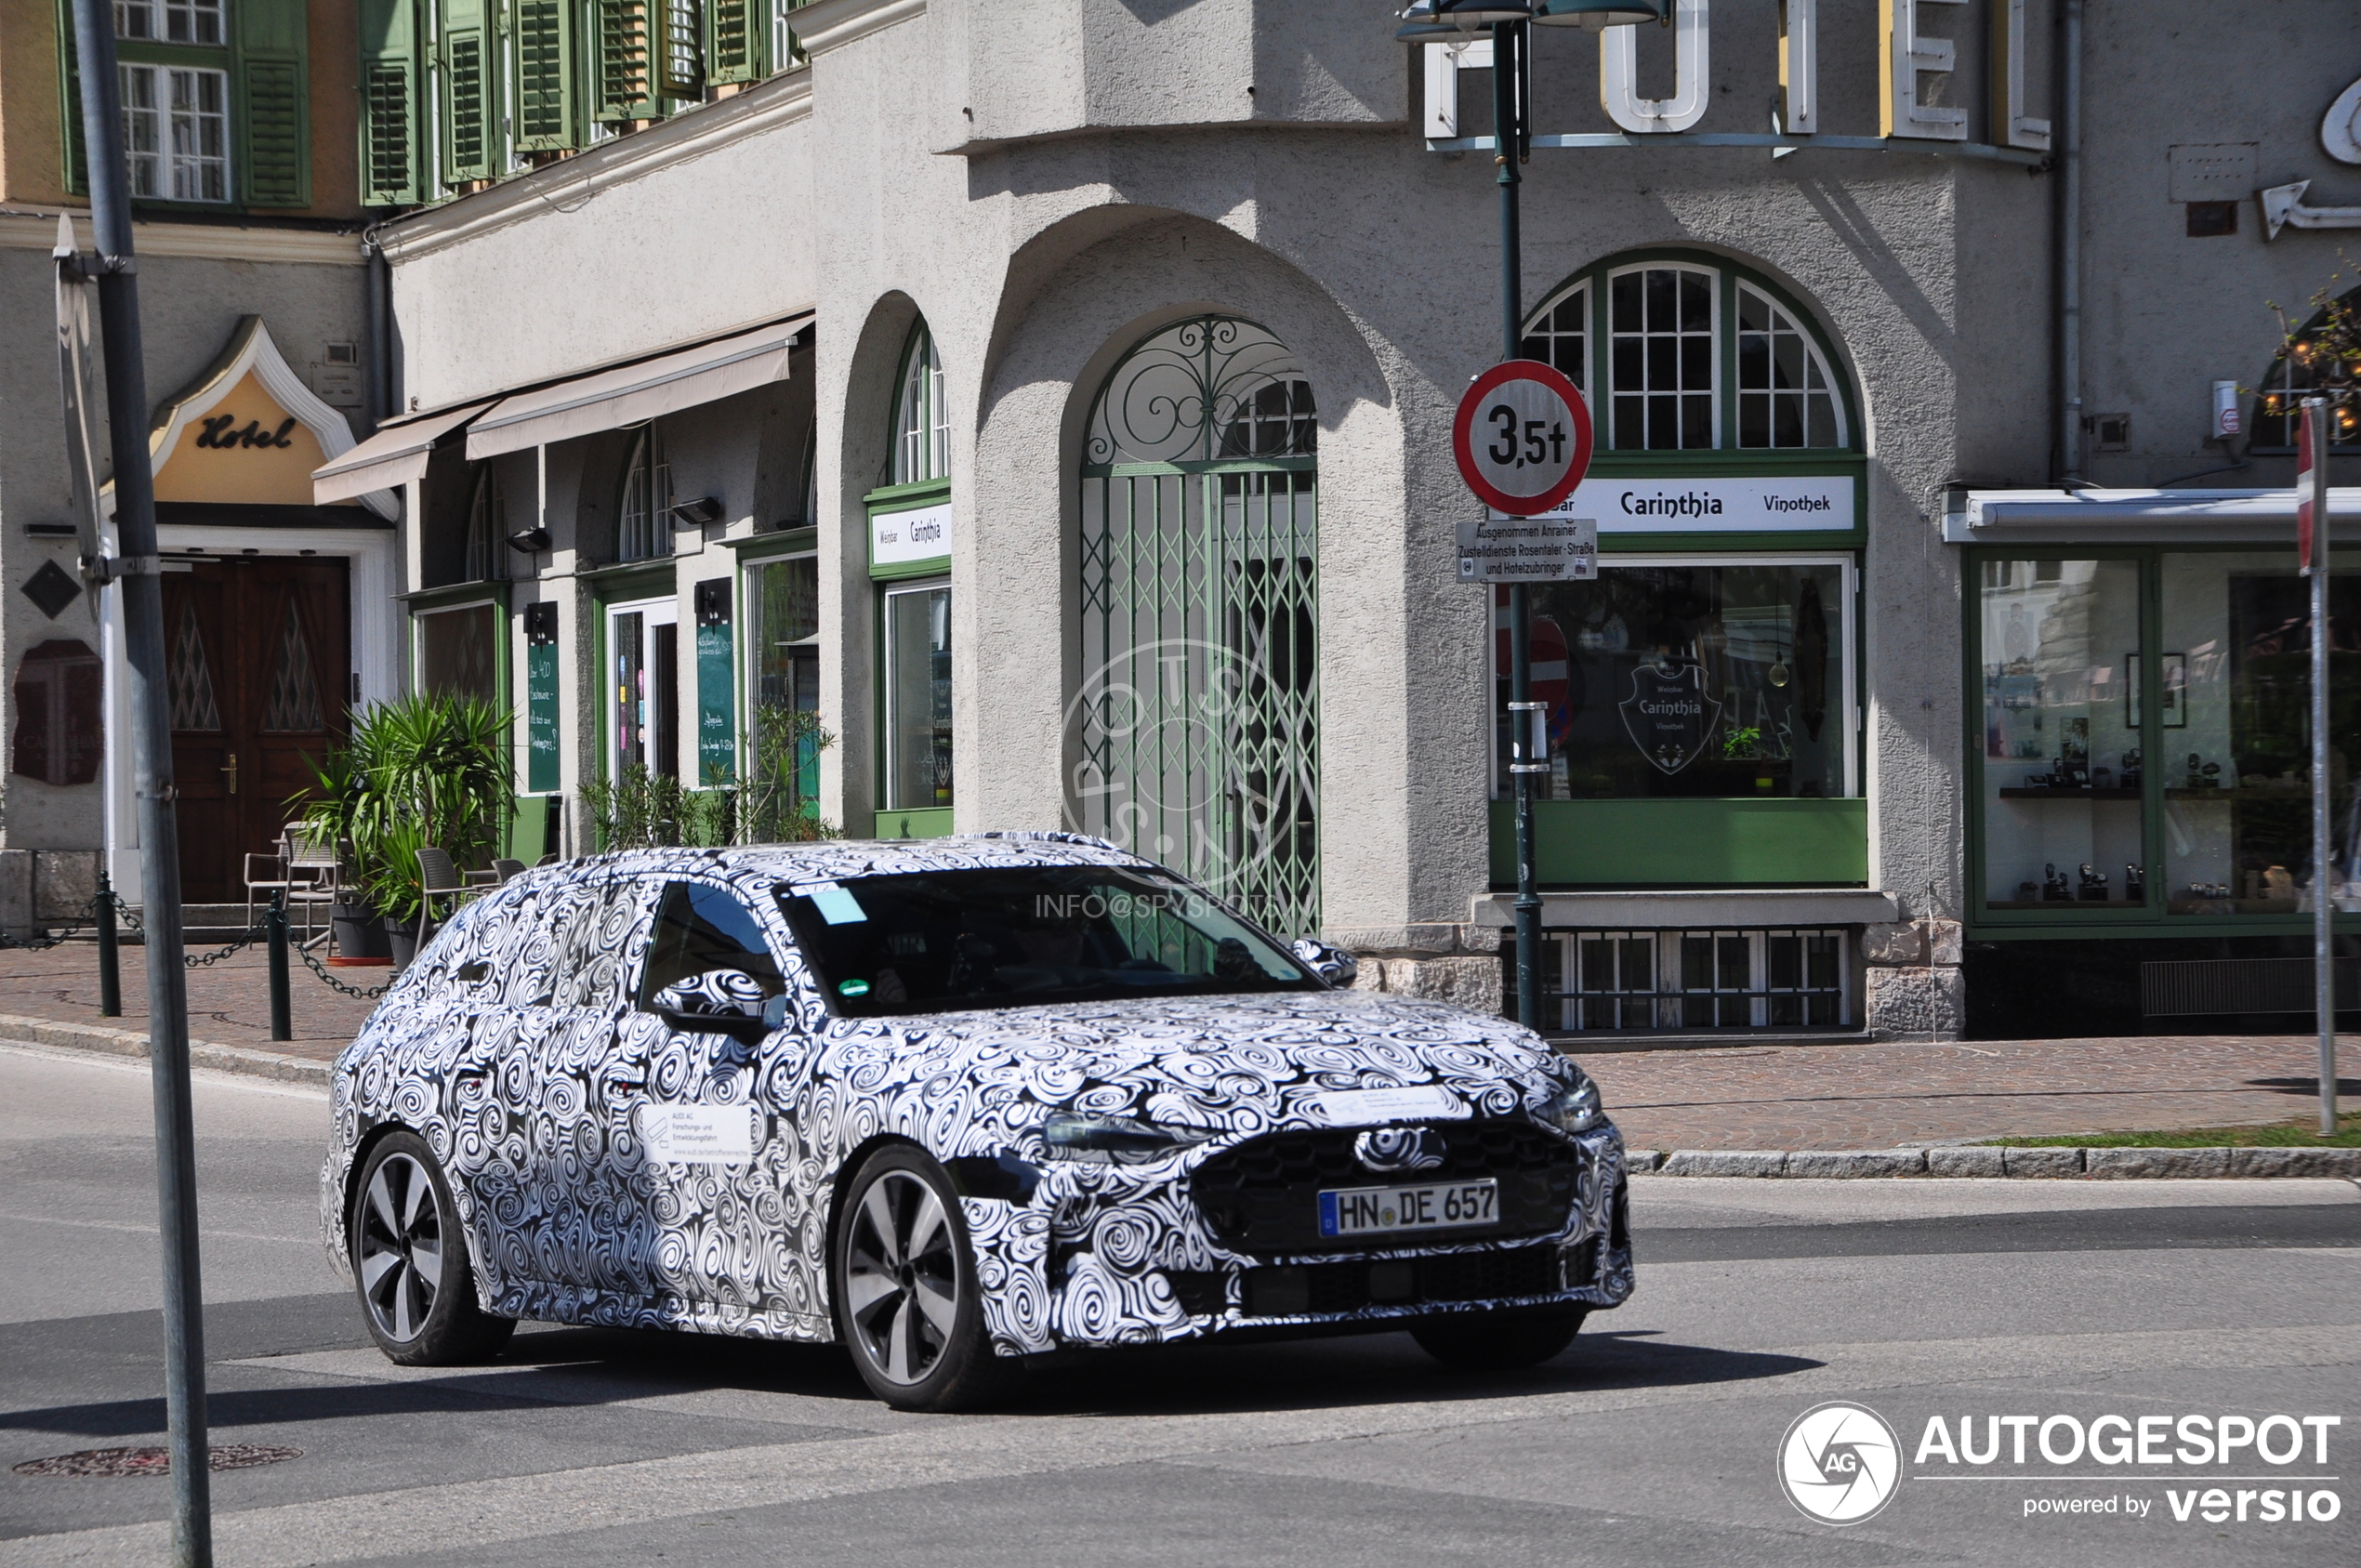 Audi A5 Avant